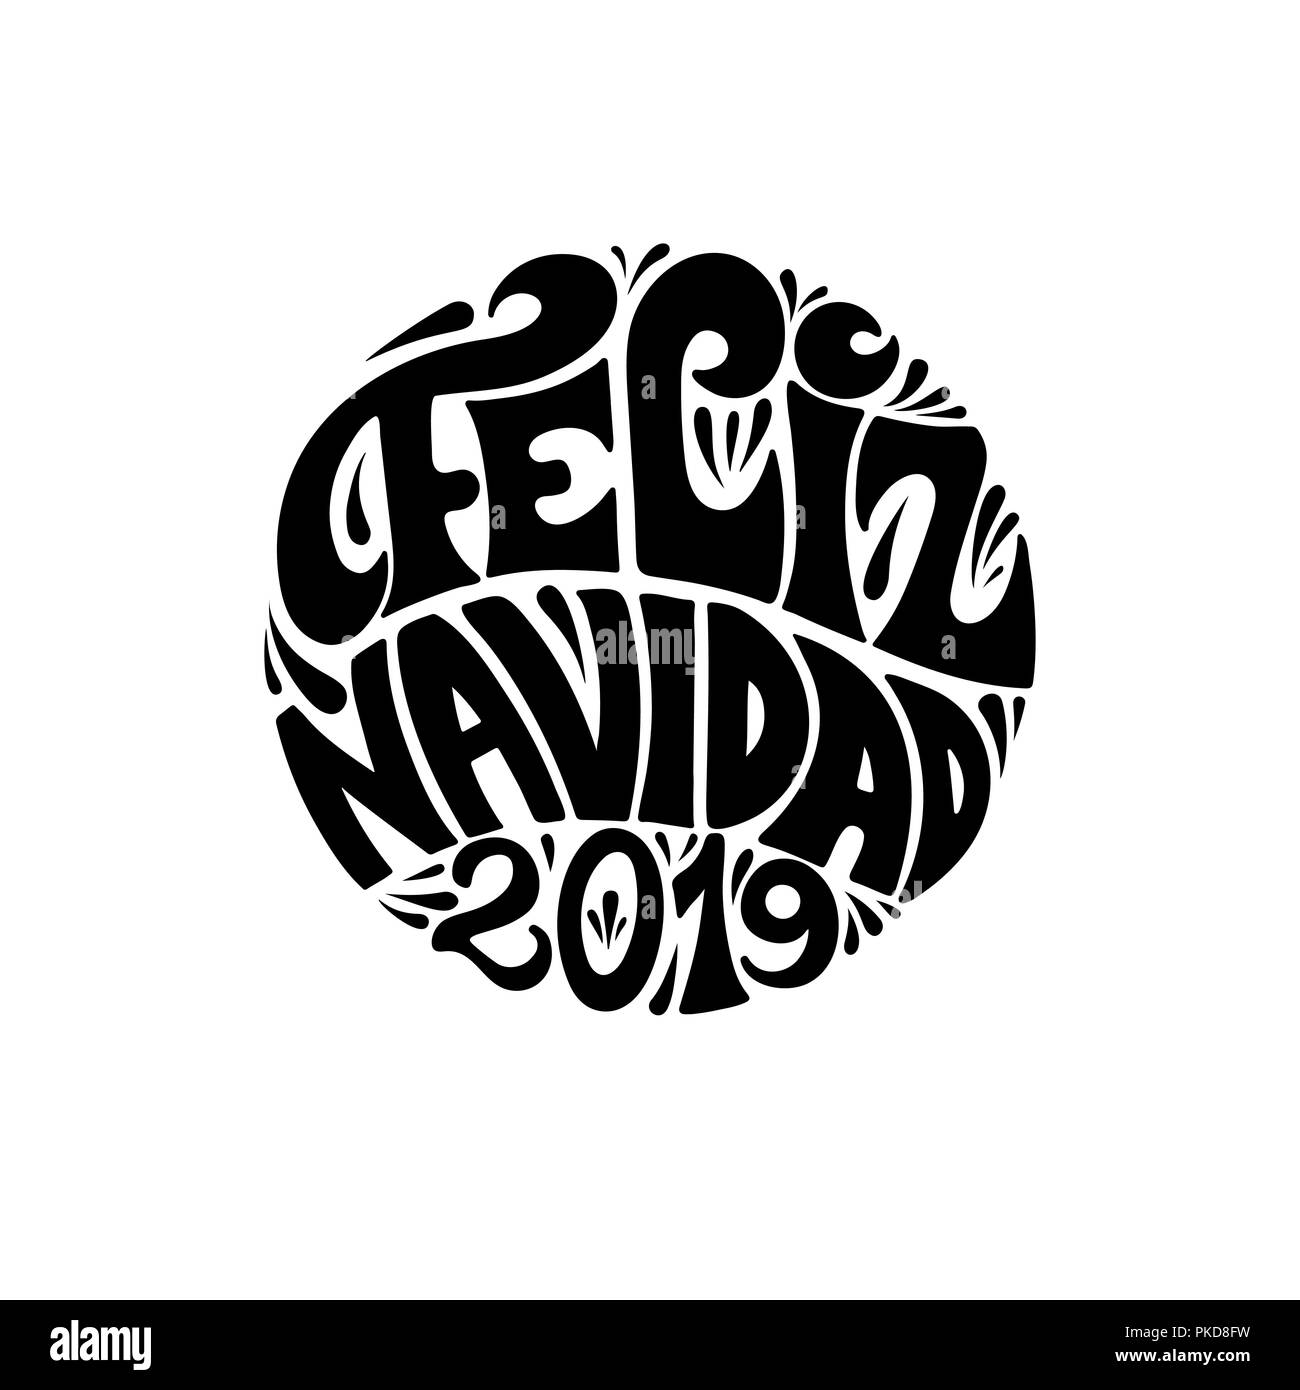 Feliz navidad 2019 round festive black lettering on white background Stock Vector